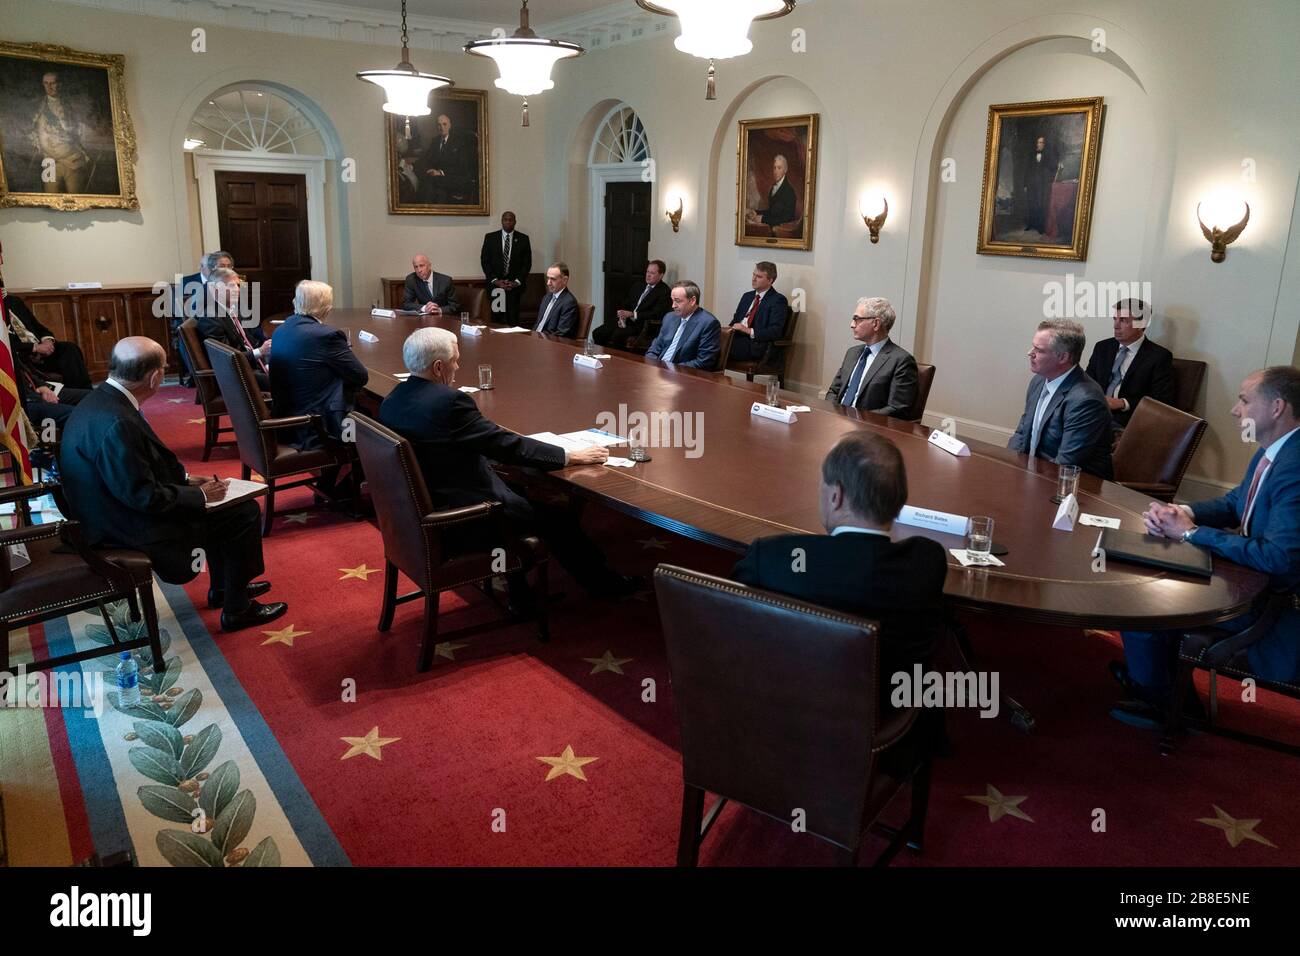 US-Präsident Donald Trump und Vizepräsident Mike Pence nehmen an einem Briefing mit Vertretern der Reise- und Tourismusbranche über das Coronavirus, COVID-19, Antwort im Kabinettsraum des Weißen Hauses am 17. März 2020 in Washington, DC Teil. Stockfoto